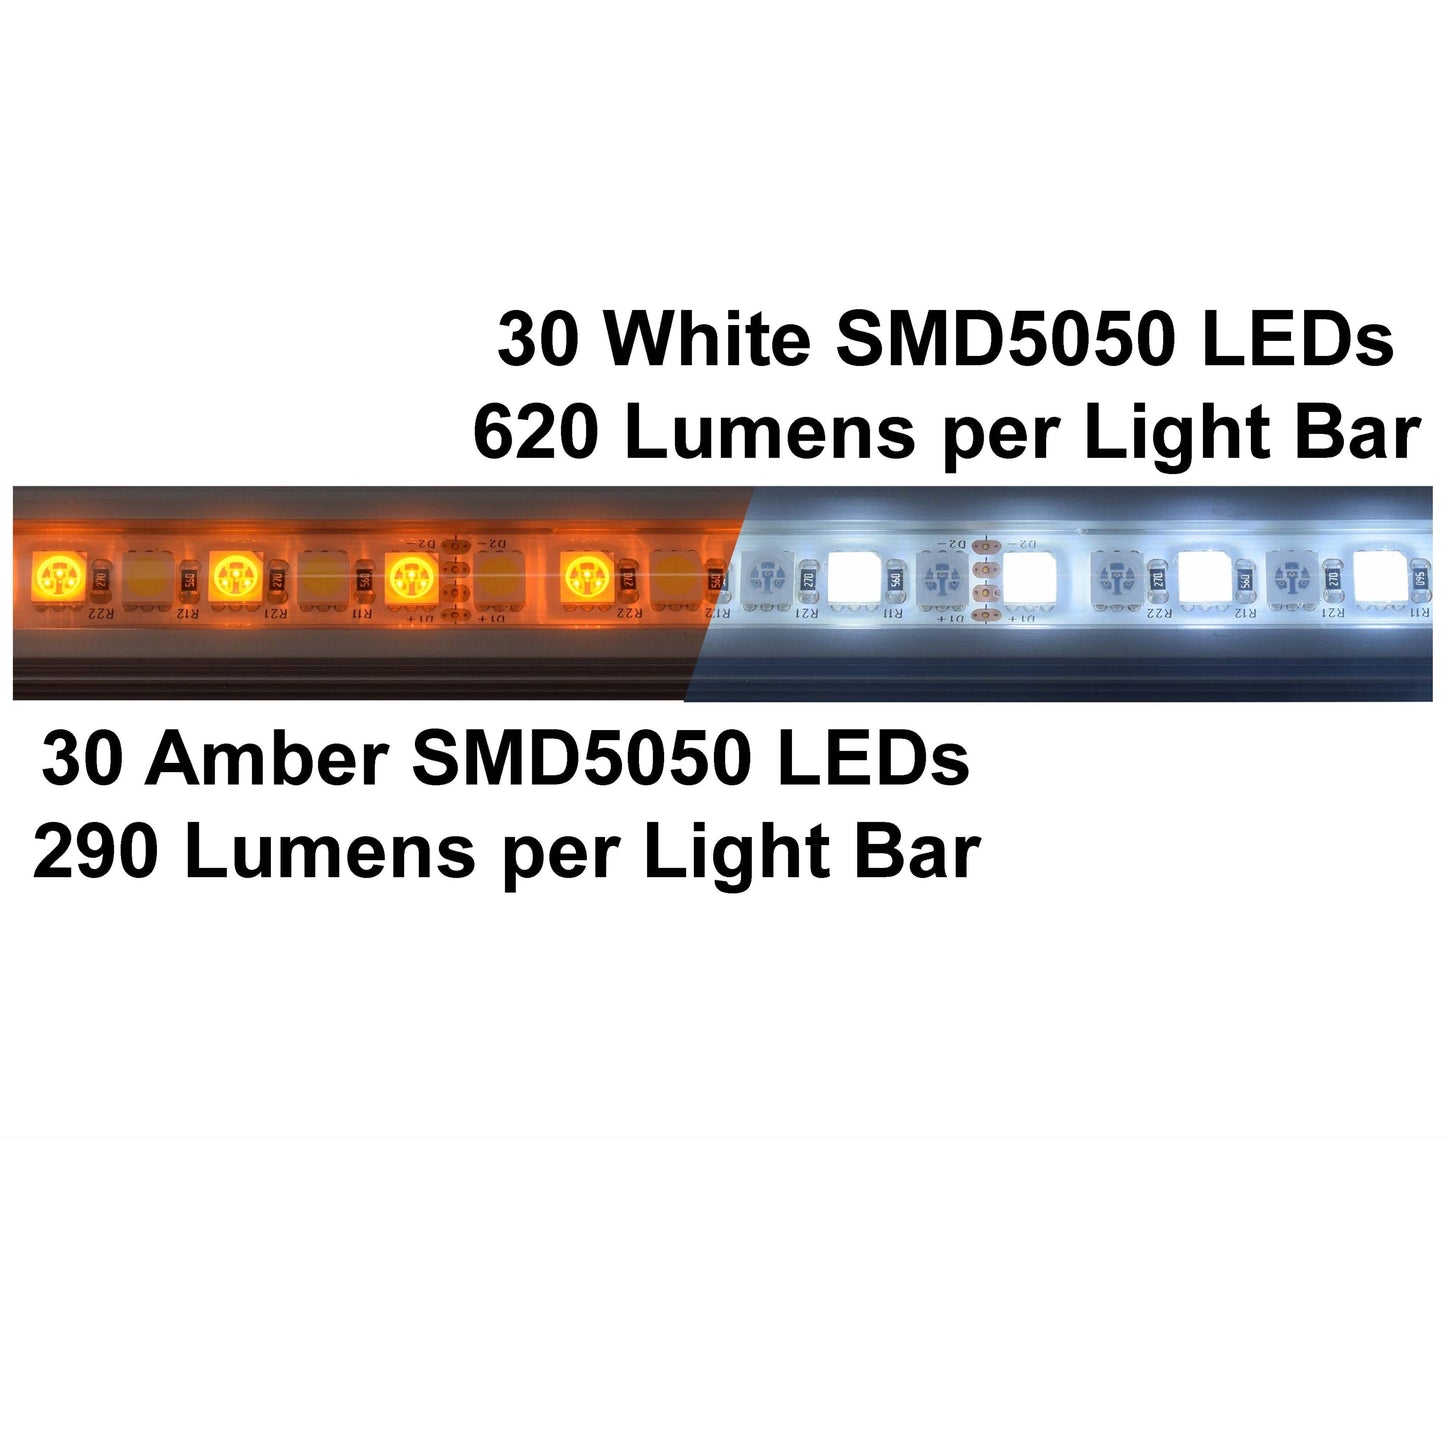 Outdoor Connection Power Strip Light Bar Kit White/Amber - 2 Bar Kit